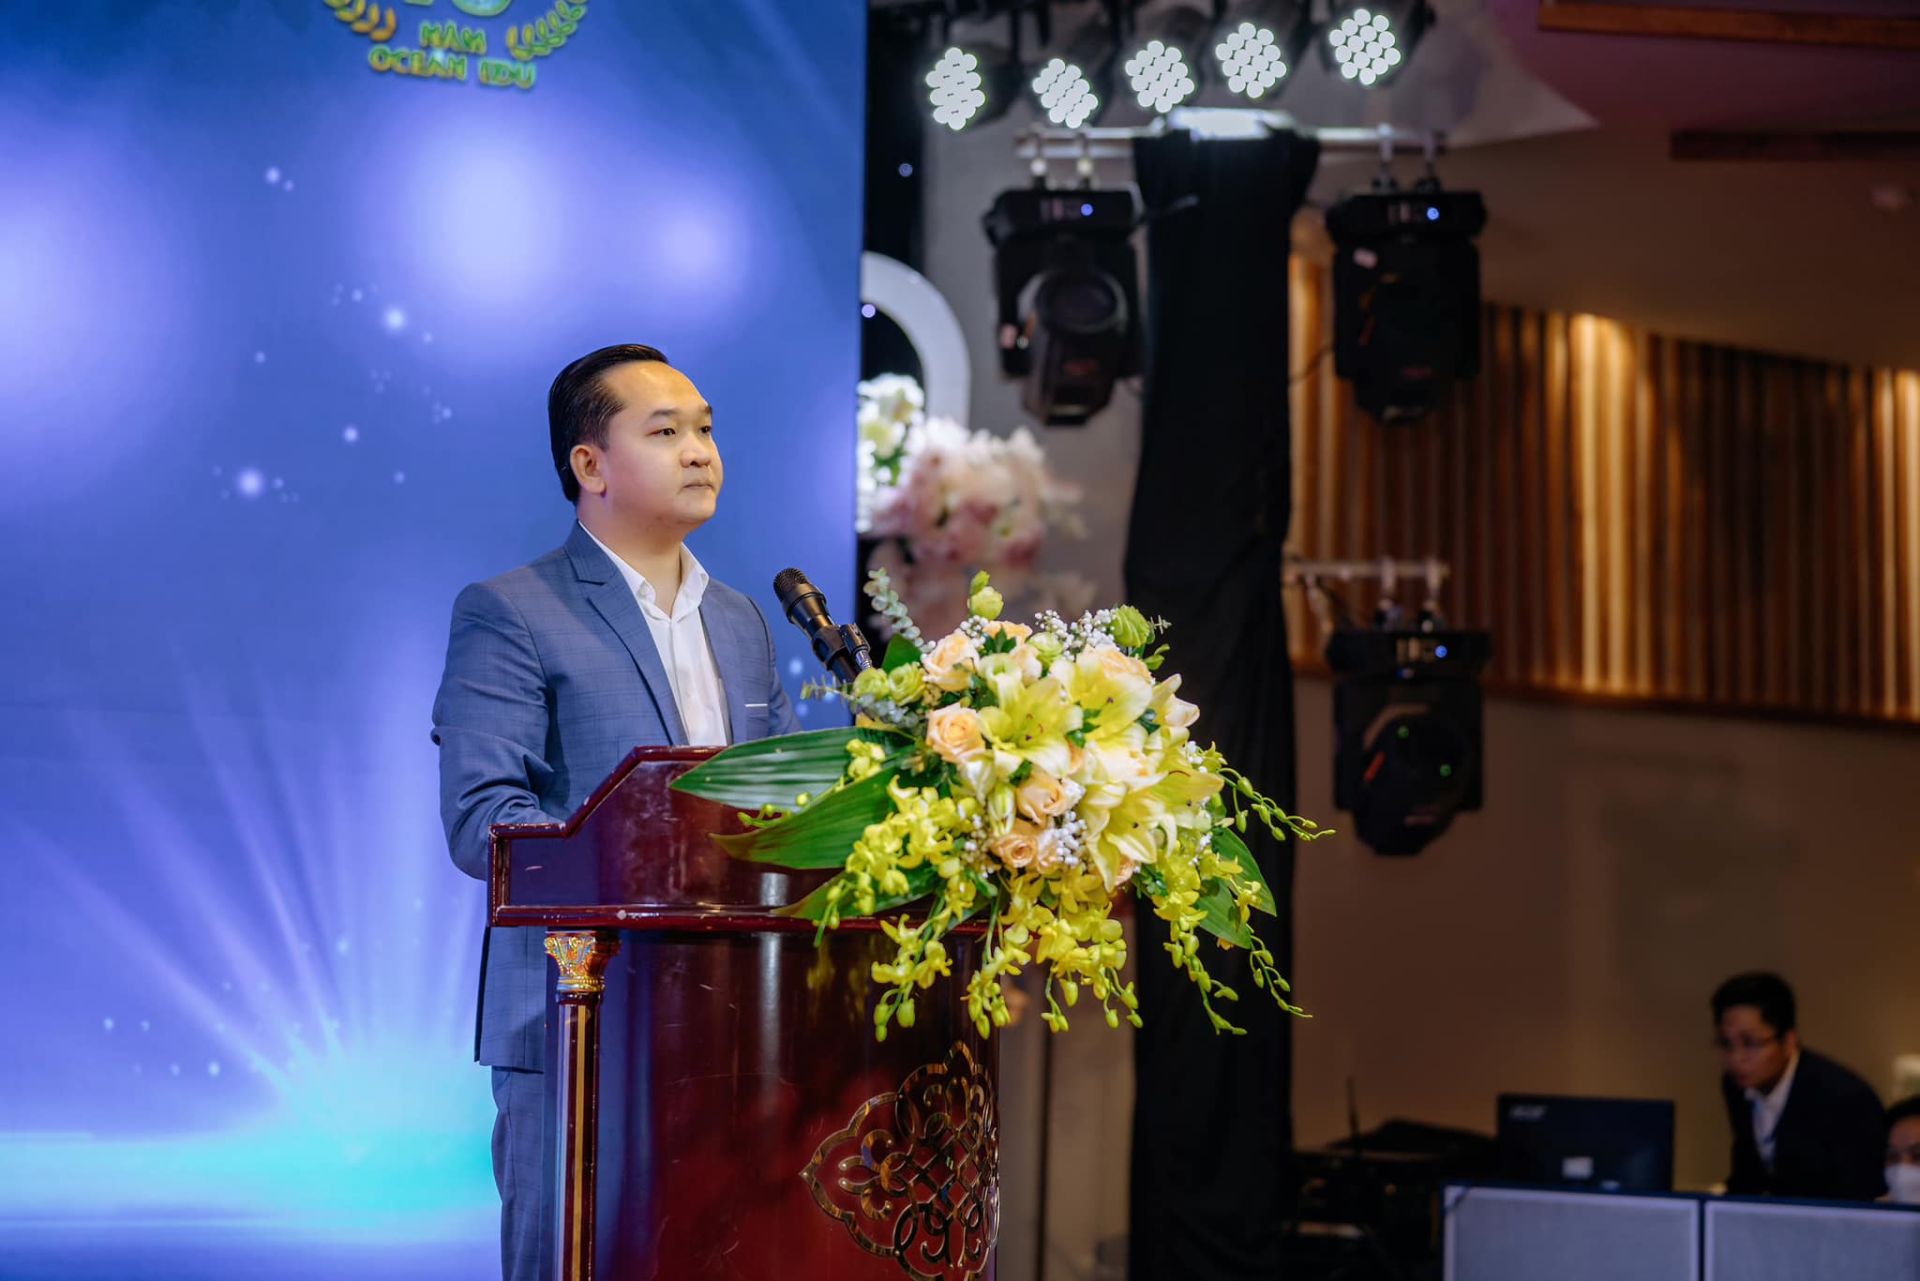 Ông Nguyễn Văn Thưởng - Phó Tổng giám đốc khối Tuyển sinh  – đại diện cho Ban lãnh đạo công ty phát biểu khai mạc chương trình